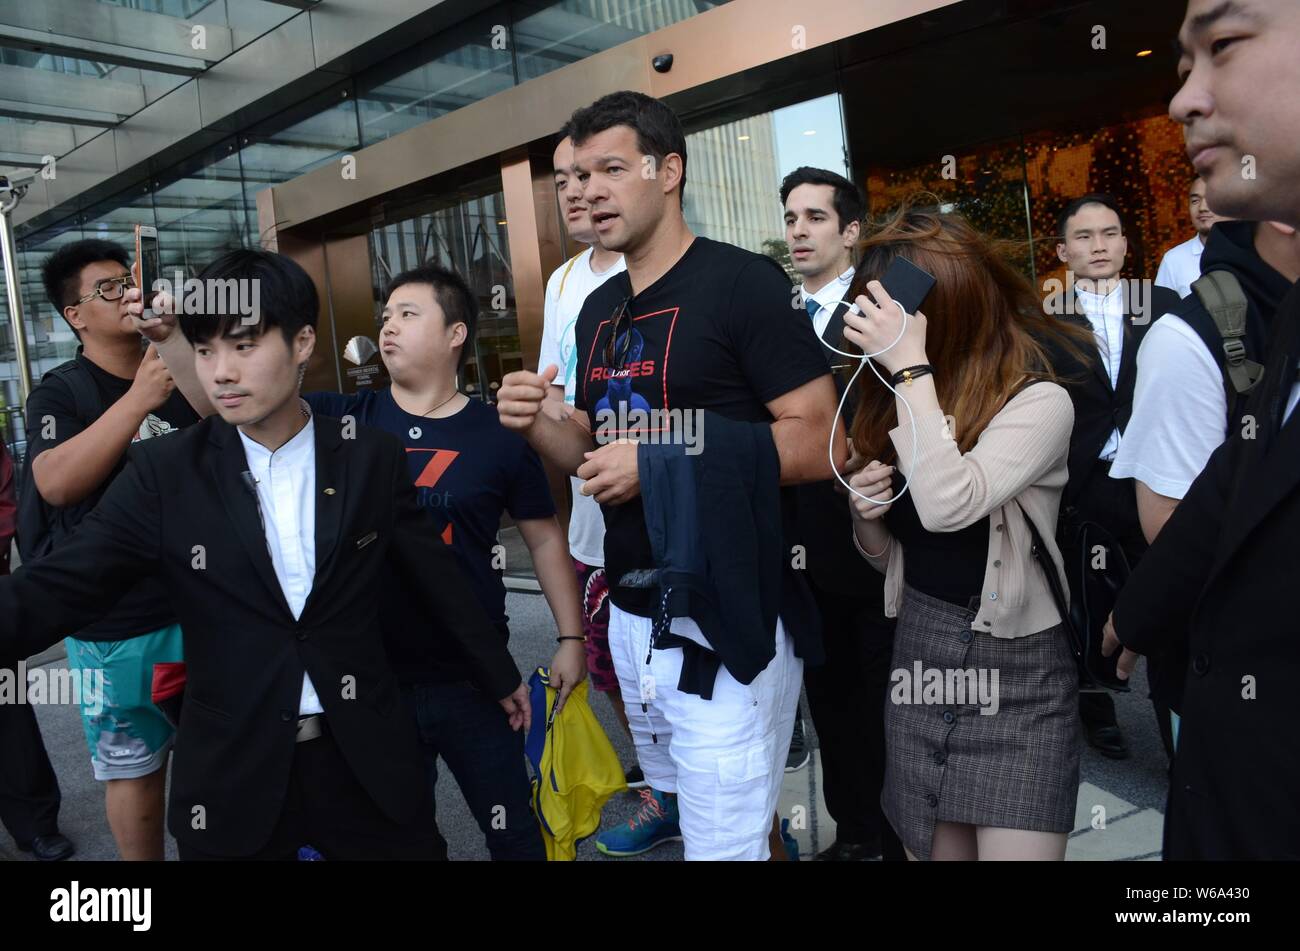 Ancien joueur allemand Michael Ballack, plus haut, est entouré par des fans et des gardes du corps alors qu'il sort d'un hôtel avec sa petite amie Natacha Tannous dans Shangh Banque D'Images